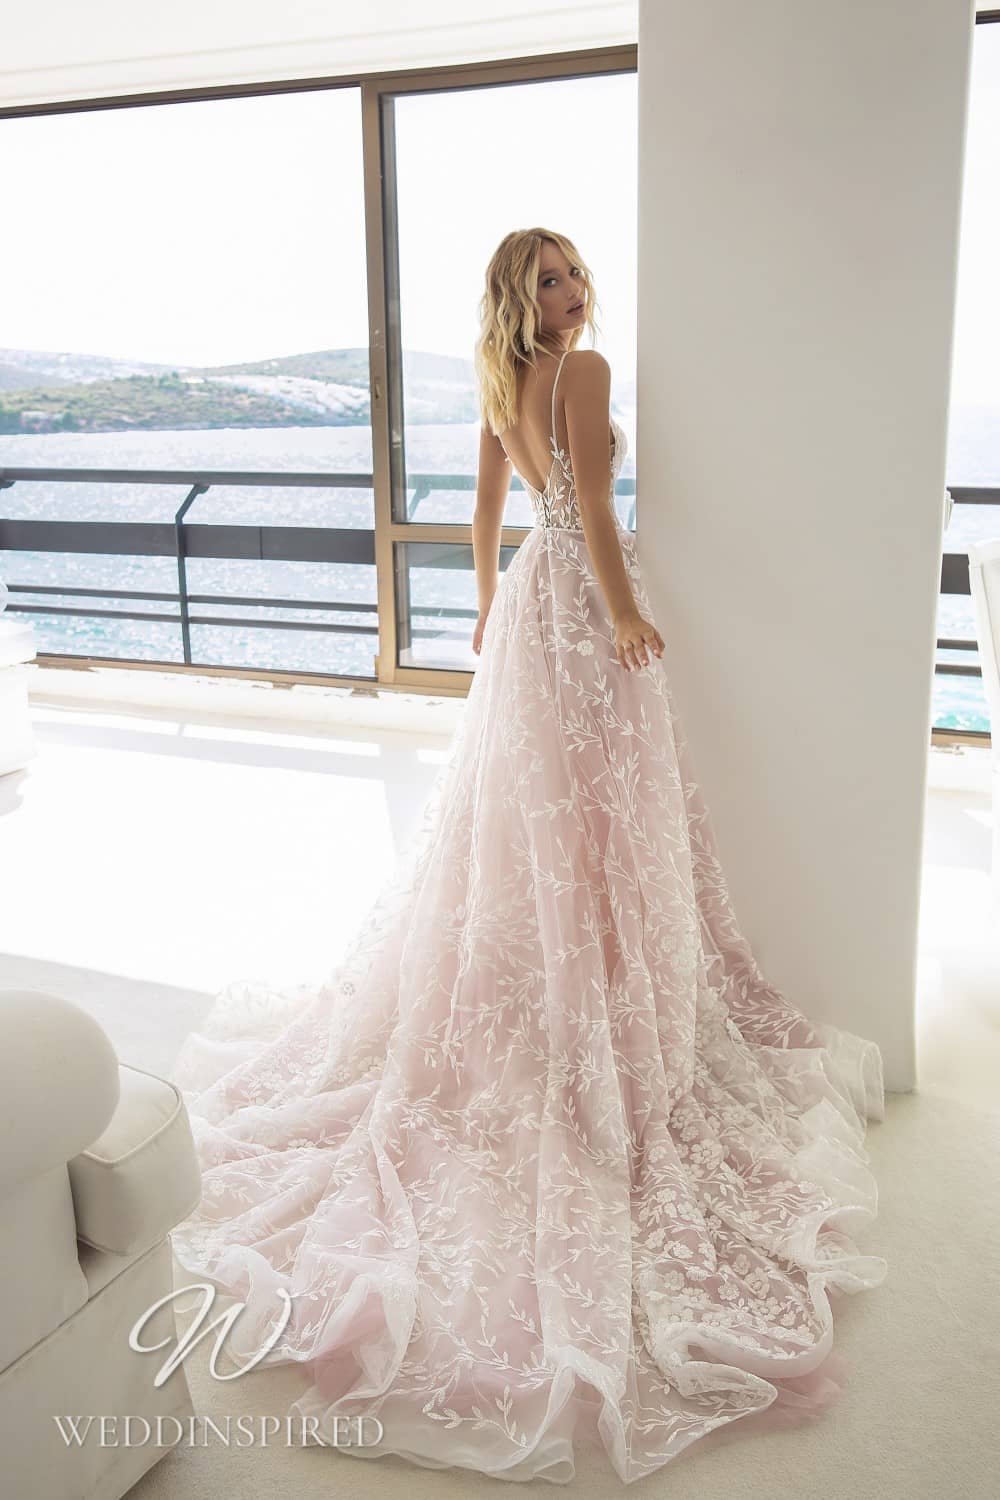 How long a wedding dress should be - Tina Valerdi